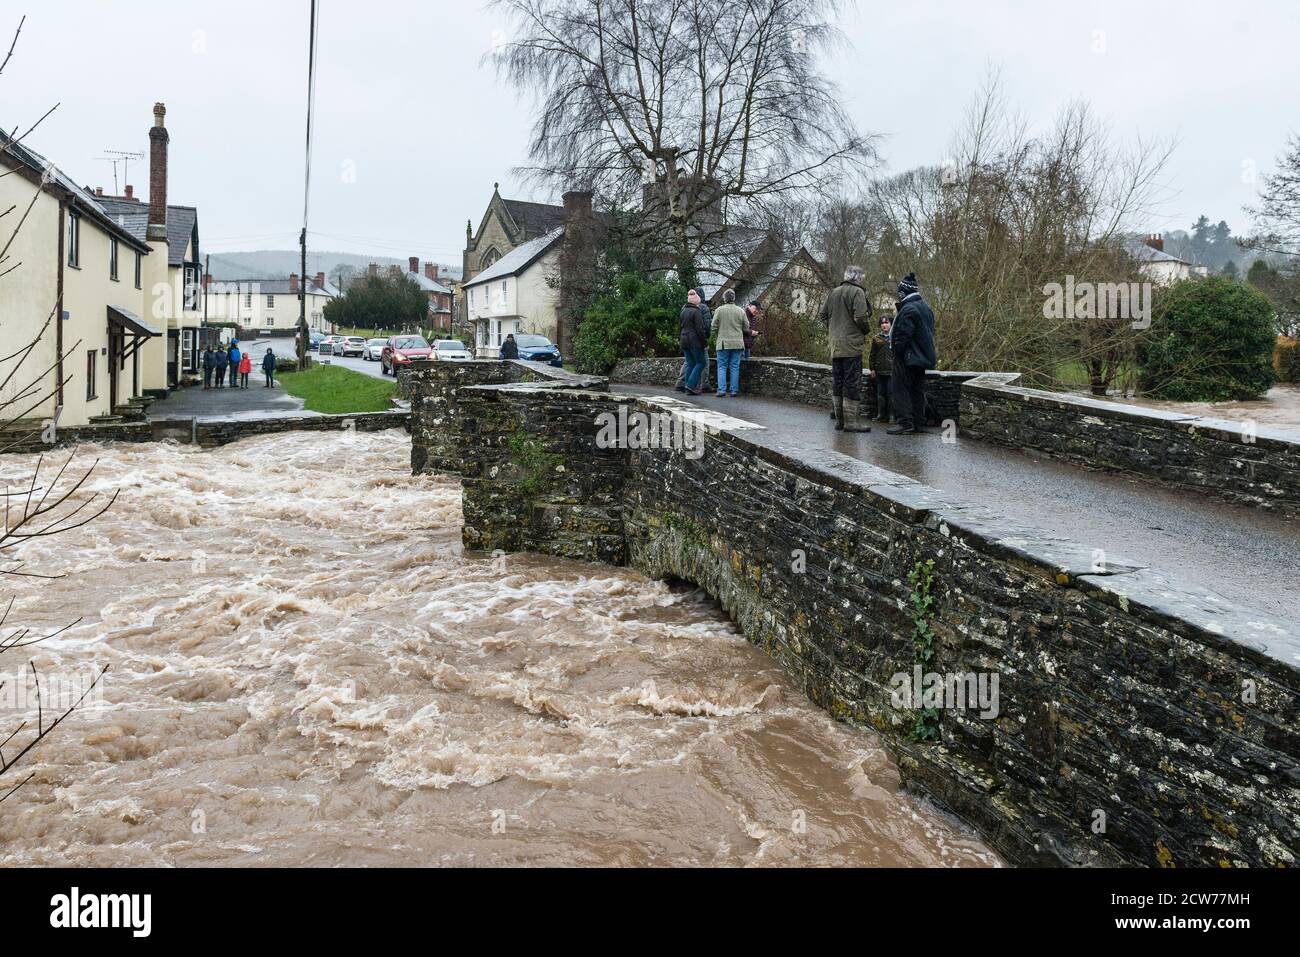 Les spectateurs se rassemblent sur l'ancien pont du 17c au-dessus de la rivière Lugg à Presteigne, Powys, Royaume-Uni, pour voir le niveau d'inondation le plus élevé après Storm Dennis au début de 2020 Banque D'Images